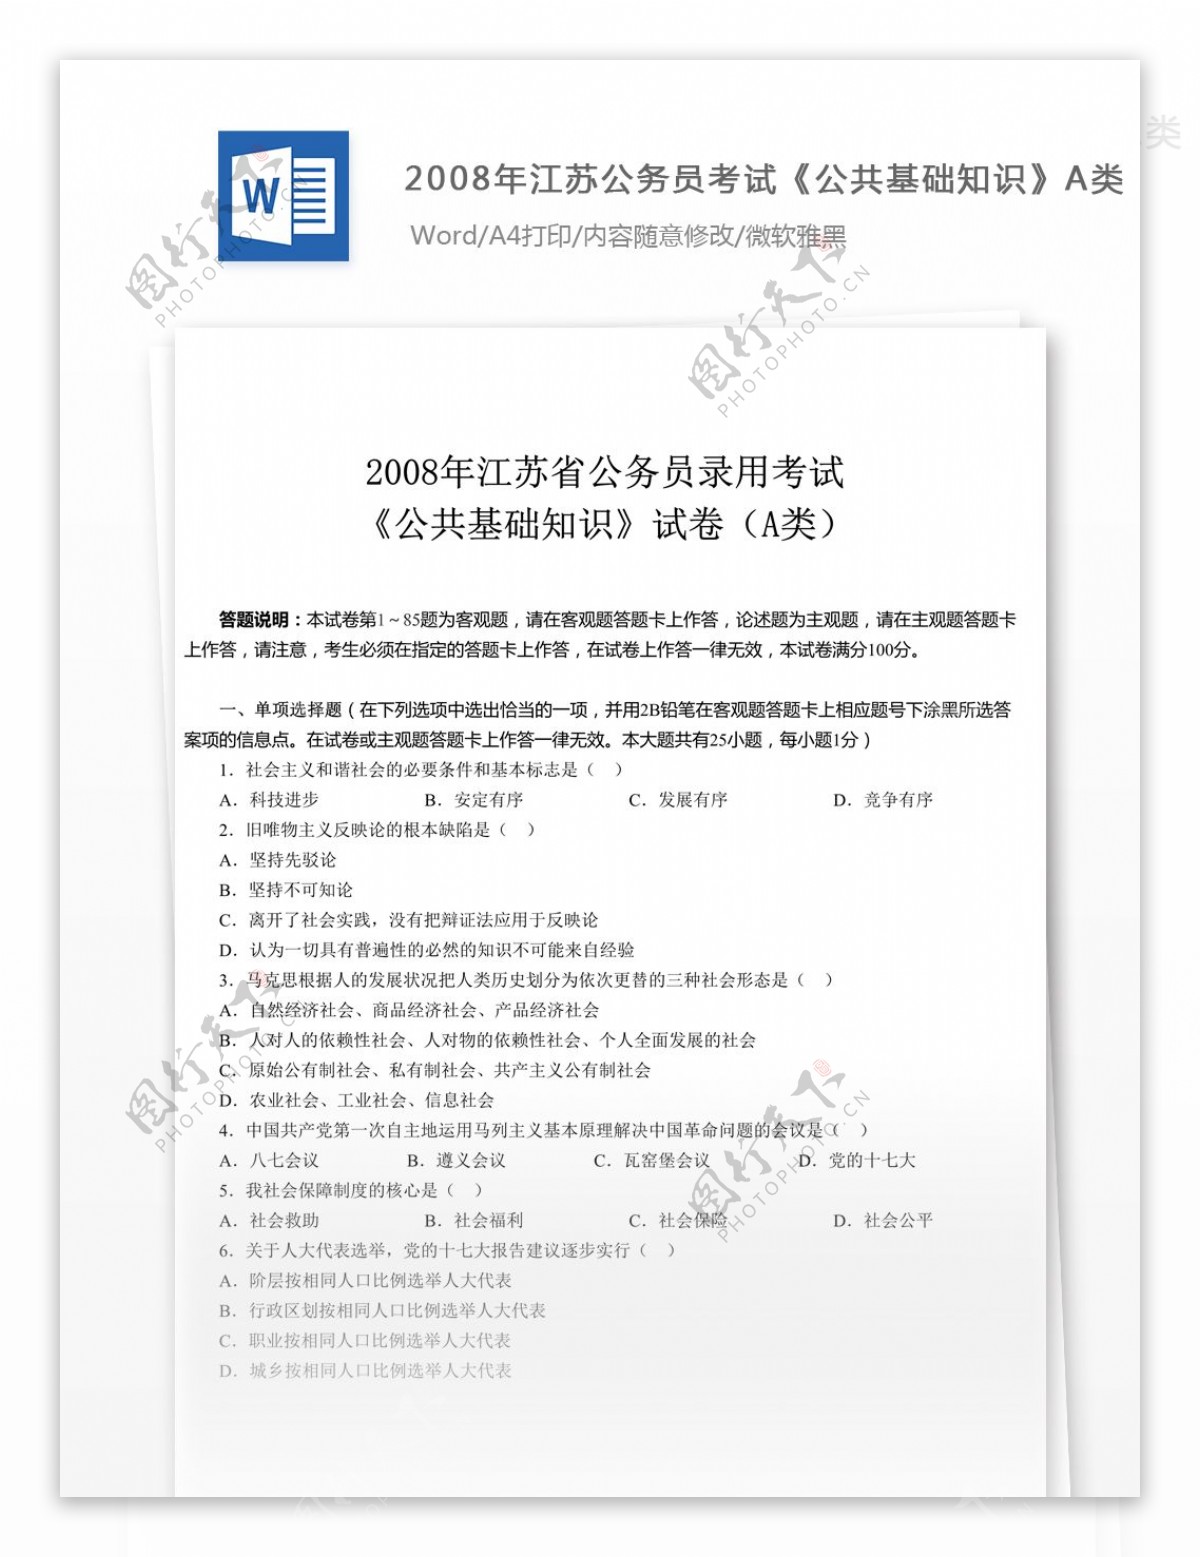 2008年江苏公务员考试公共基础知识